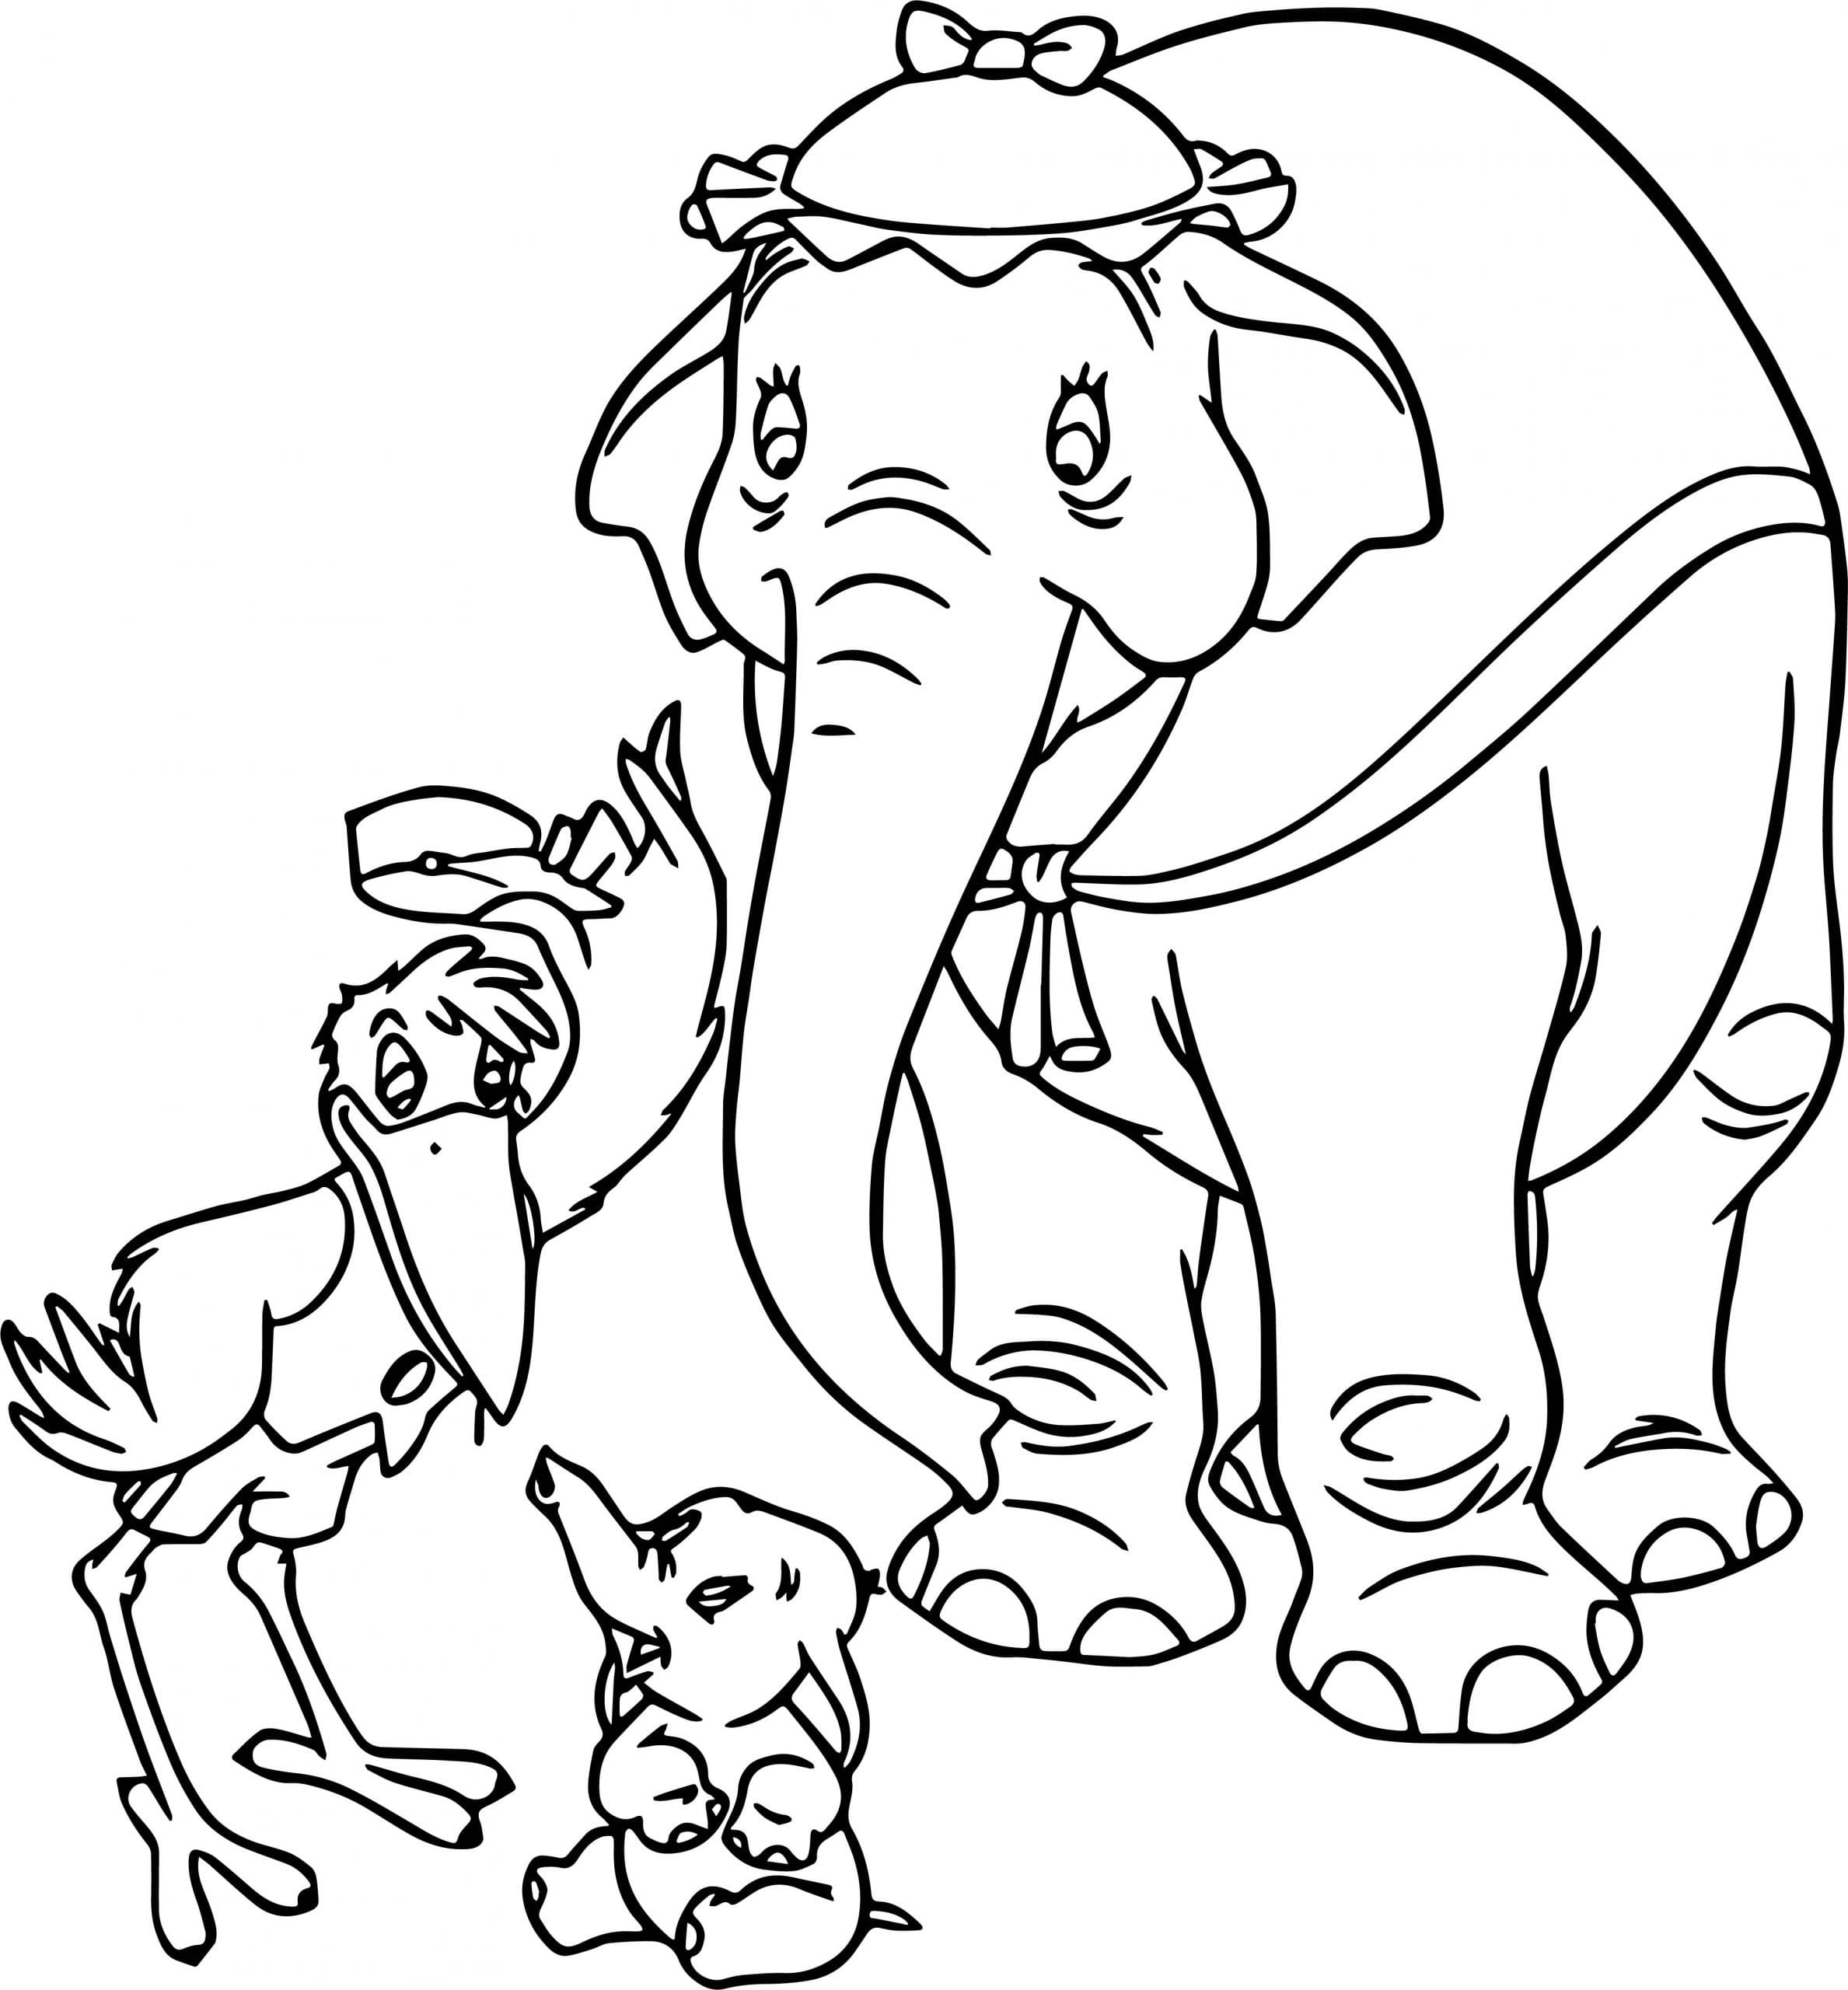 Desenhos do Dumbo para colorir - 70 imagens para impressão gratuita